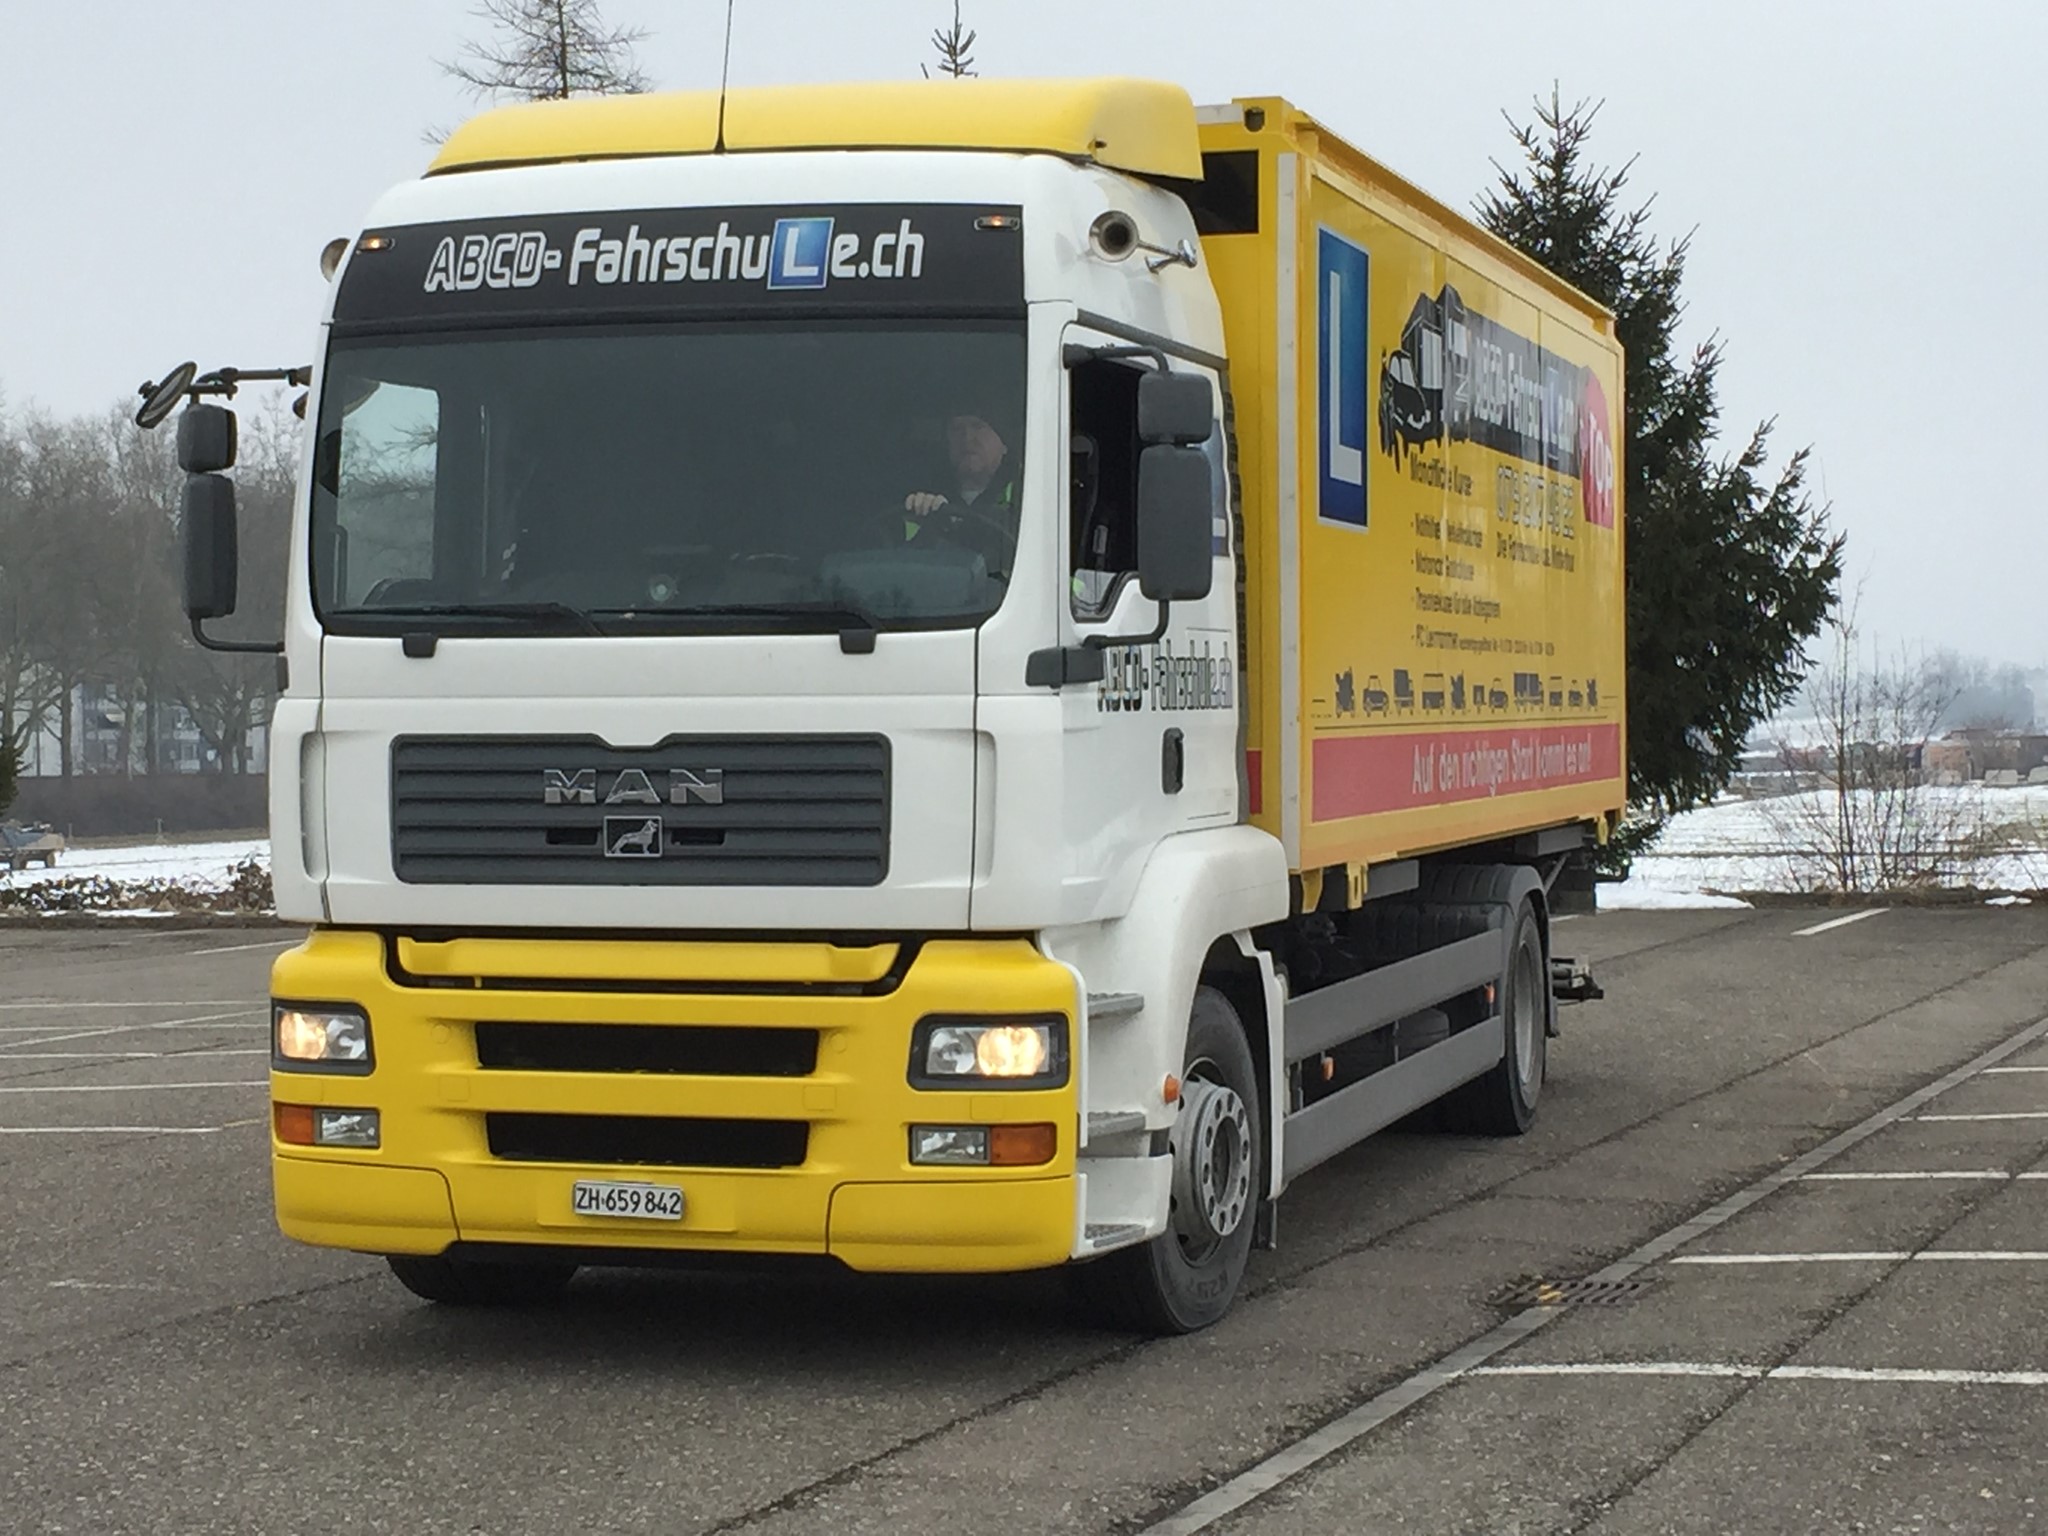 ABCD Fahrschule Winterthur wir sind deine seriöse und preiswerte Lastwagenfahrschule für deine Lastwagenprüfung n Winterthur